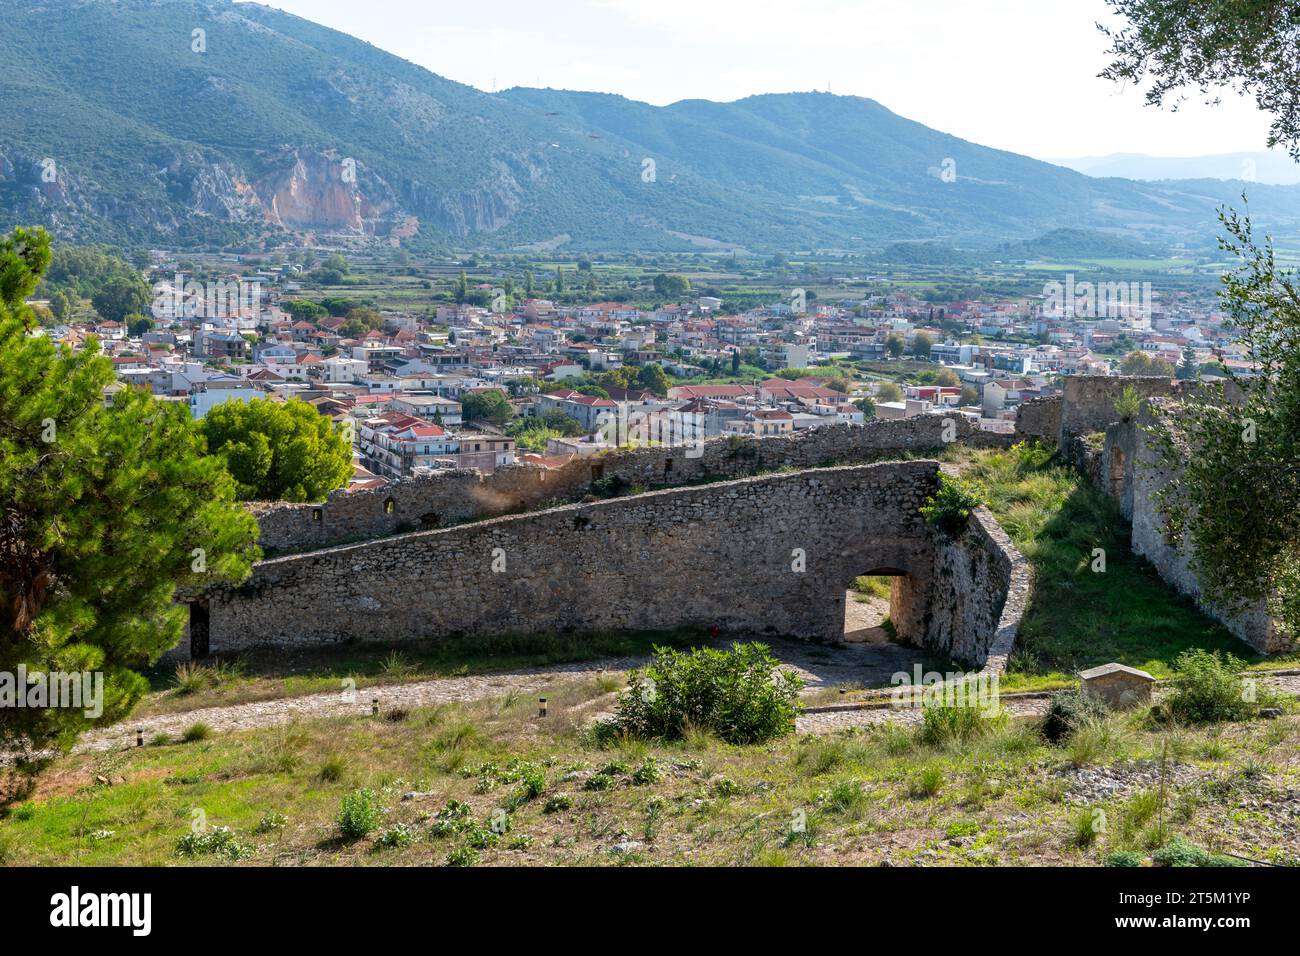 Una vista desde Vonitsa Castillo veneciano de la ciudad de Vonitsa. Grecia. Foto de stock